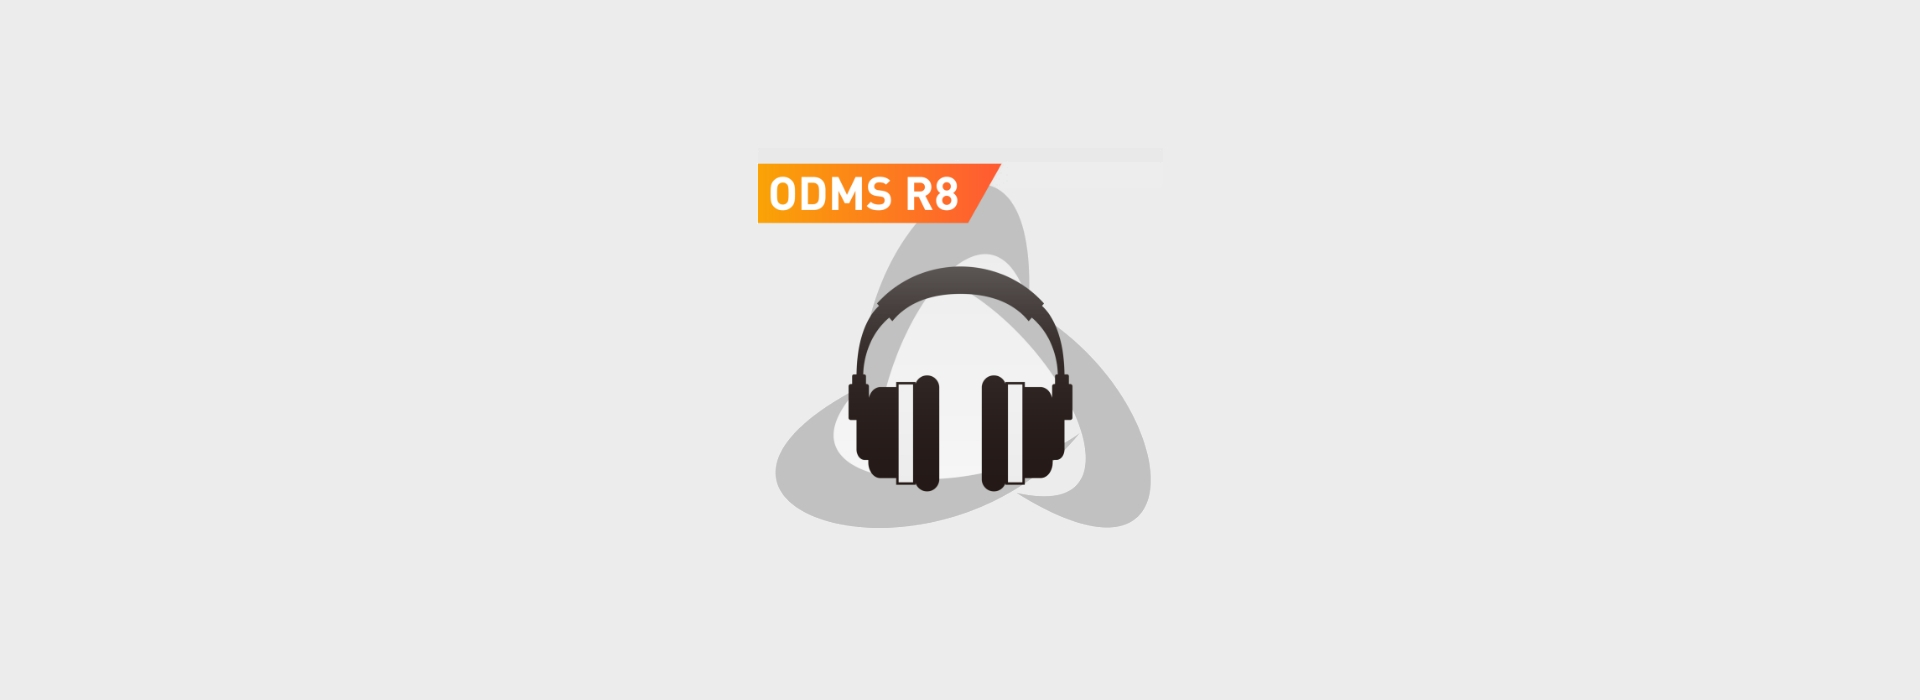 OM-SYSTEM ODMS-R8 DIKTAT-STUTTGART 017